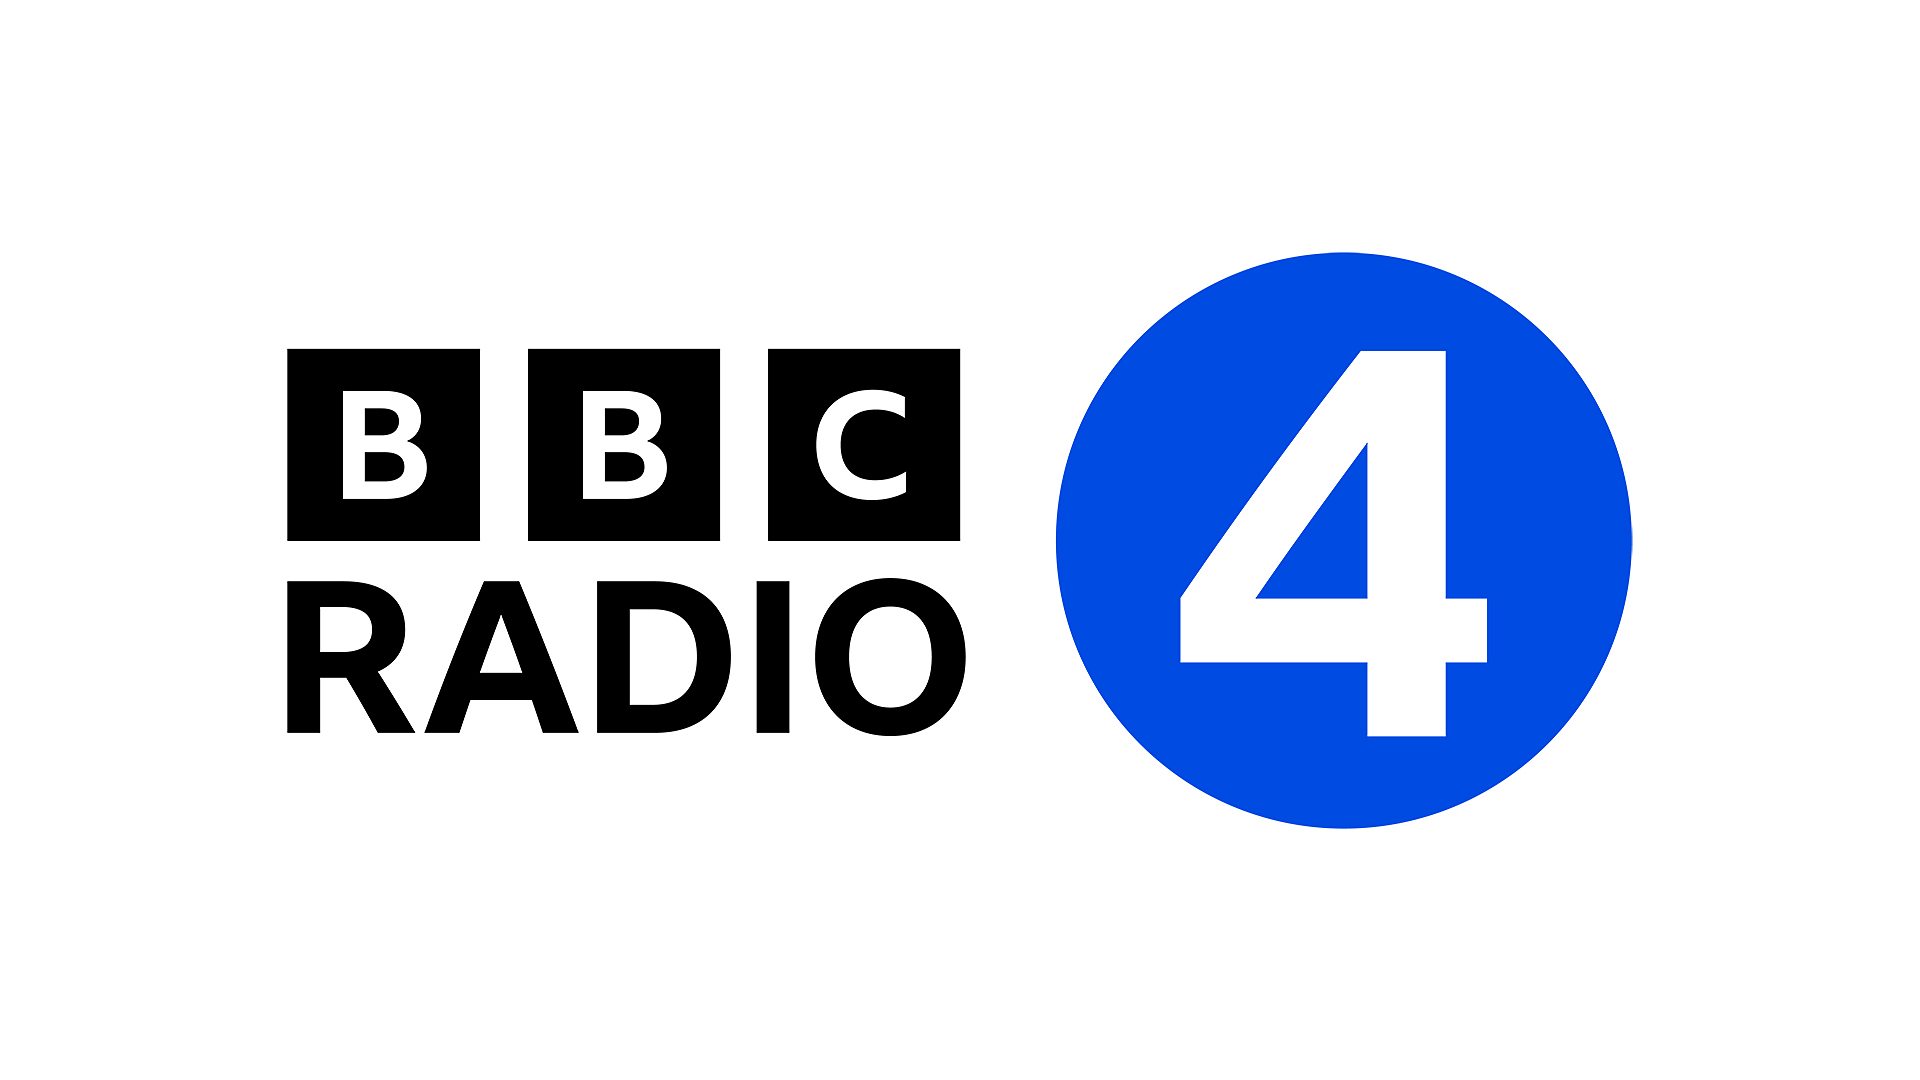 BBC Radio 4 coverage of NHS Health Check at 75